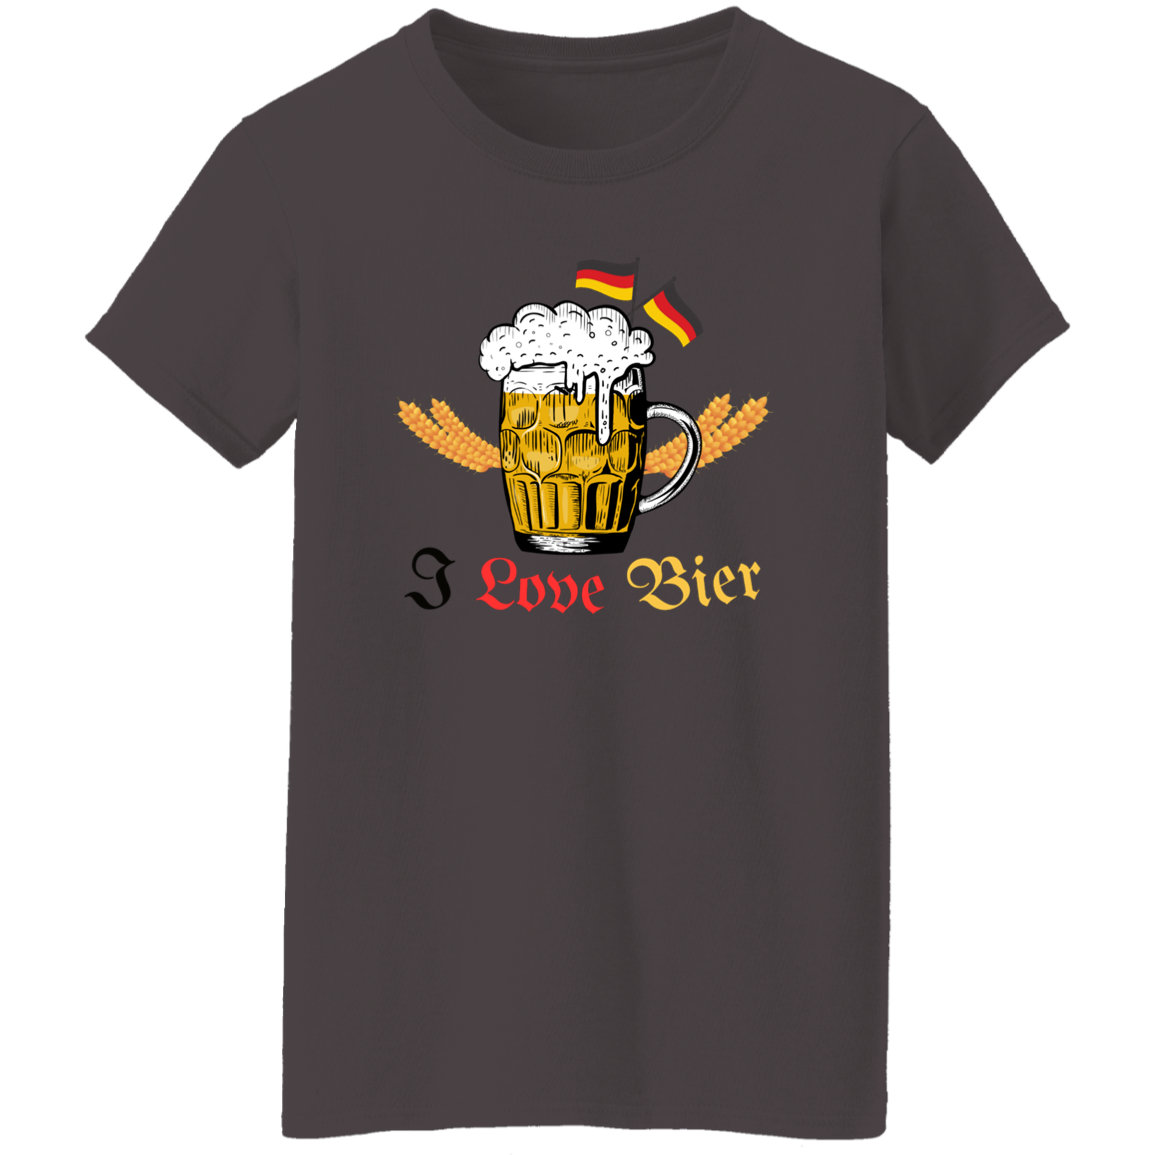 I Love Bier (Beer) - Women's, Ladies' T-Shirt